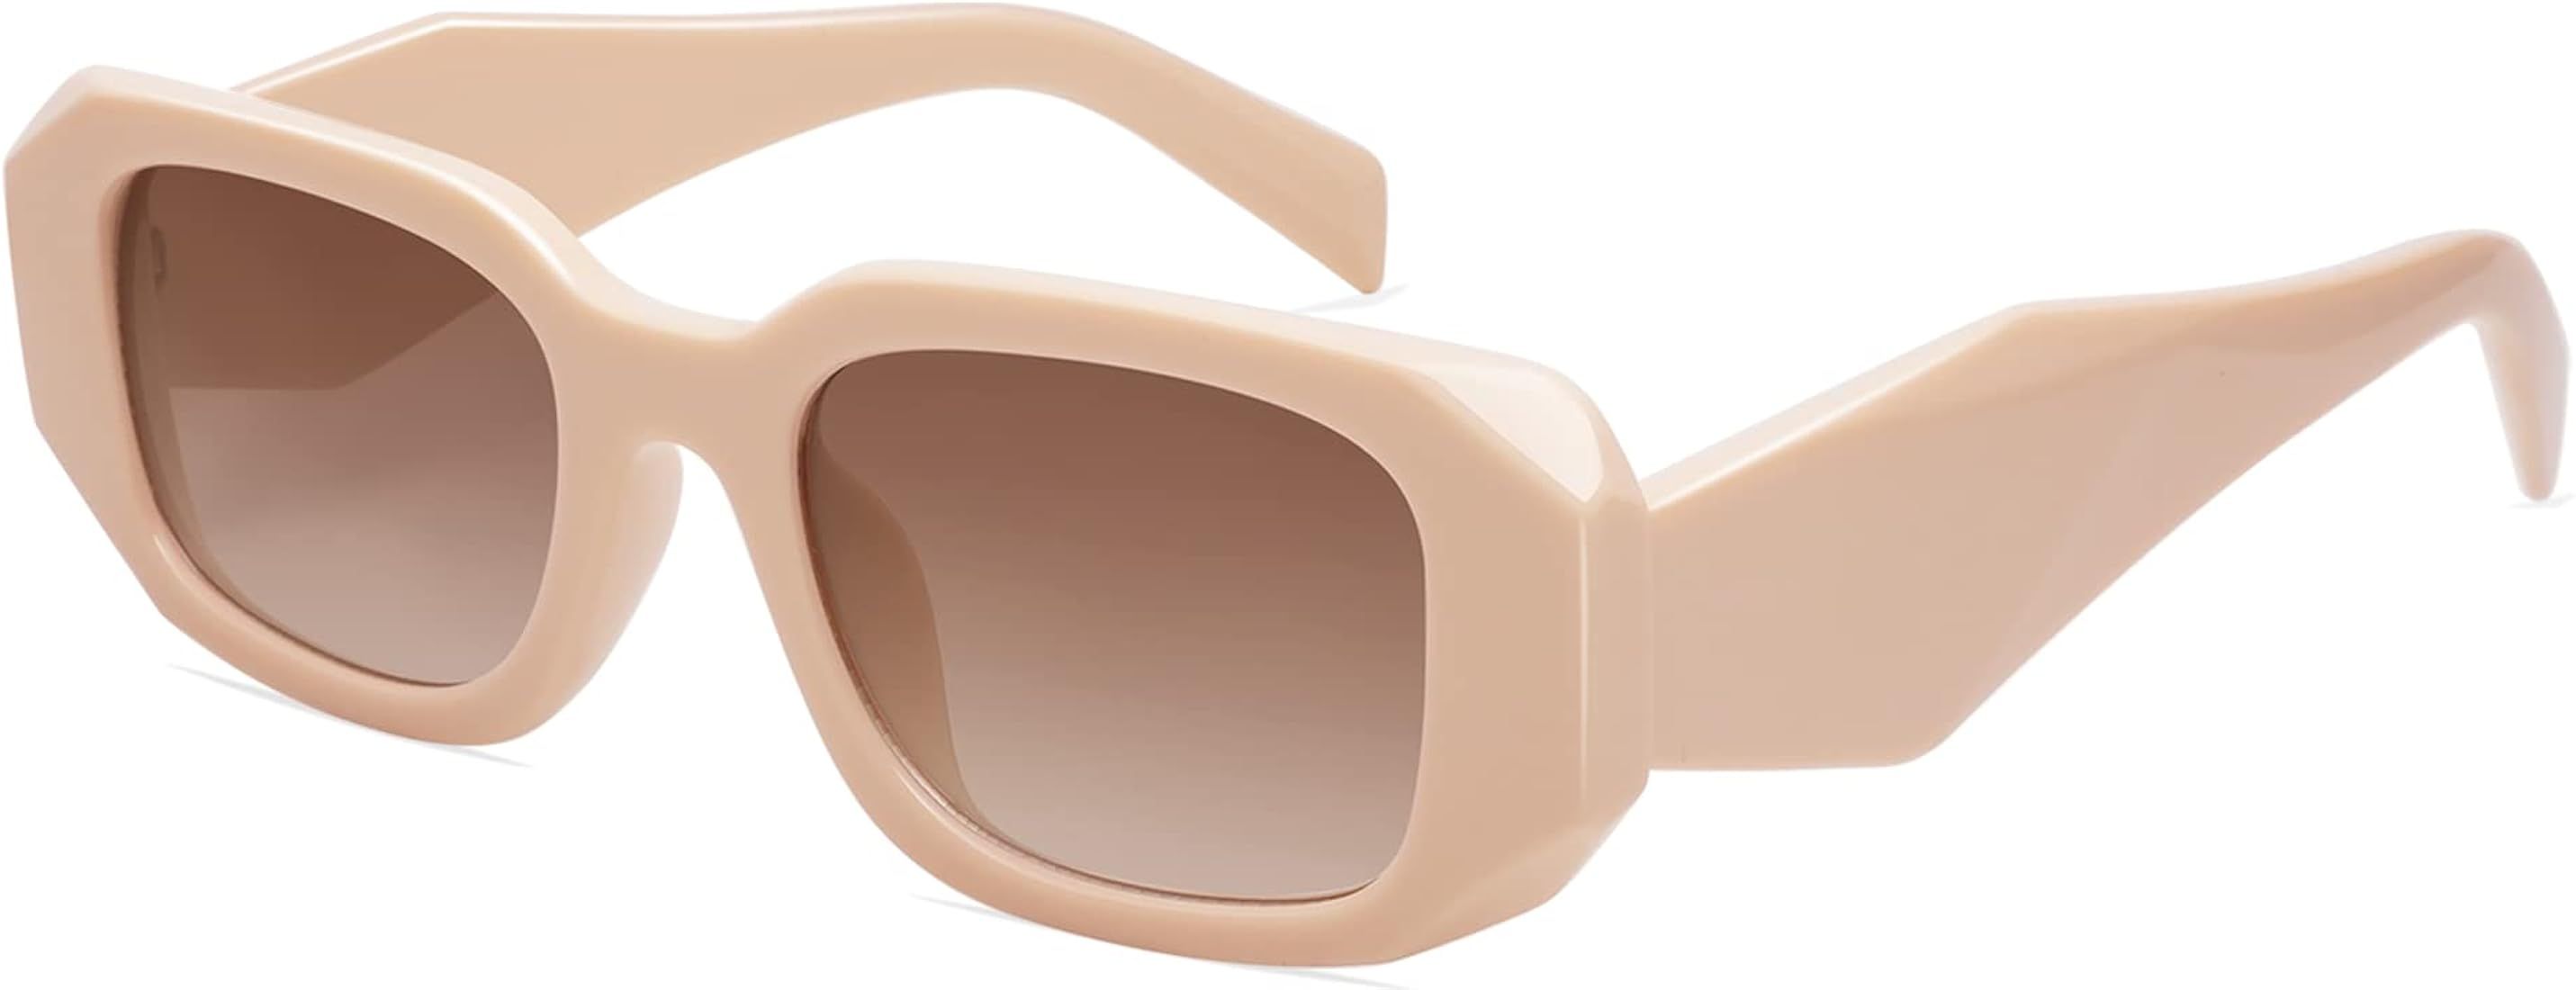 VANLINKER Trendy Rectangle Sunglasses for Women Men Retro Geometric Frame Vintage 90s Square Eyew... | Amazon (US)